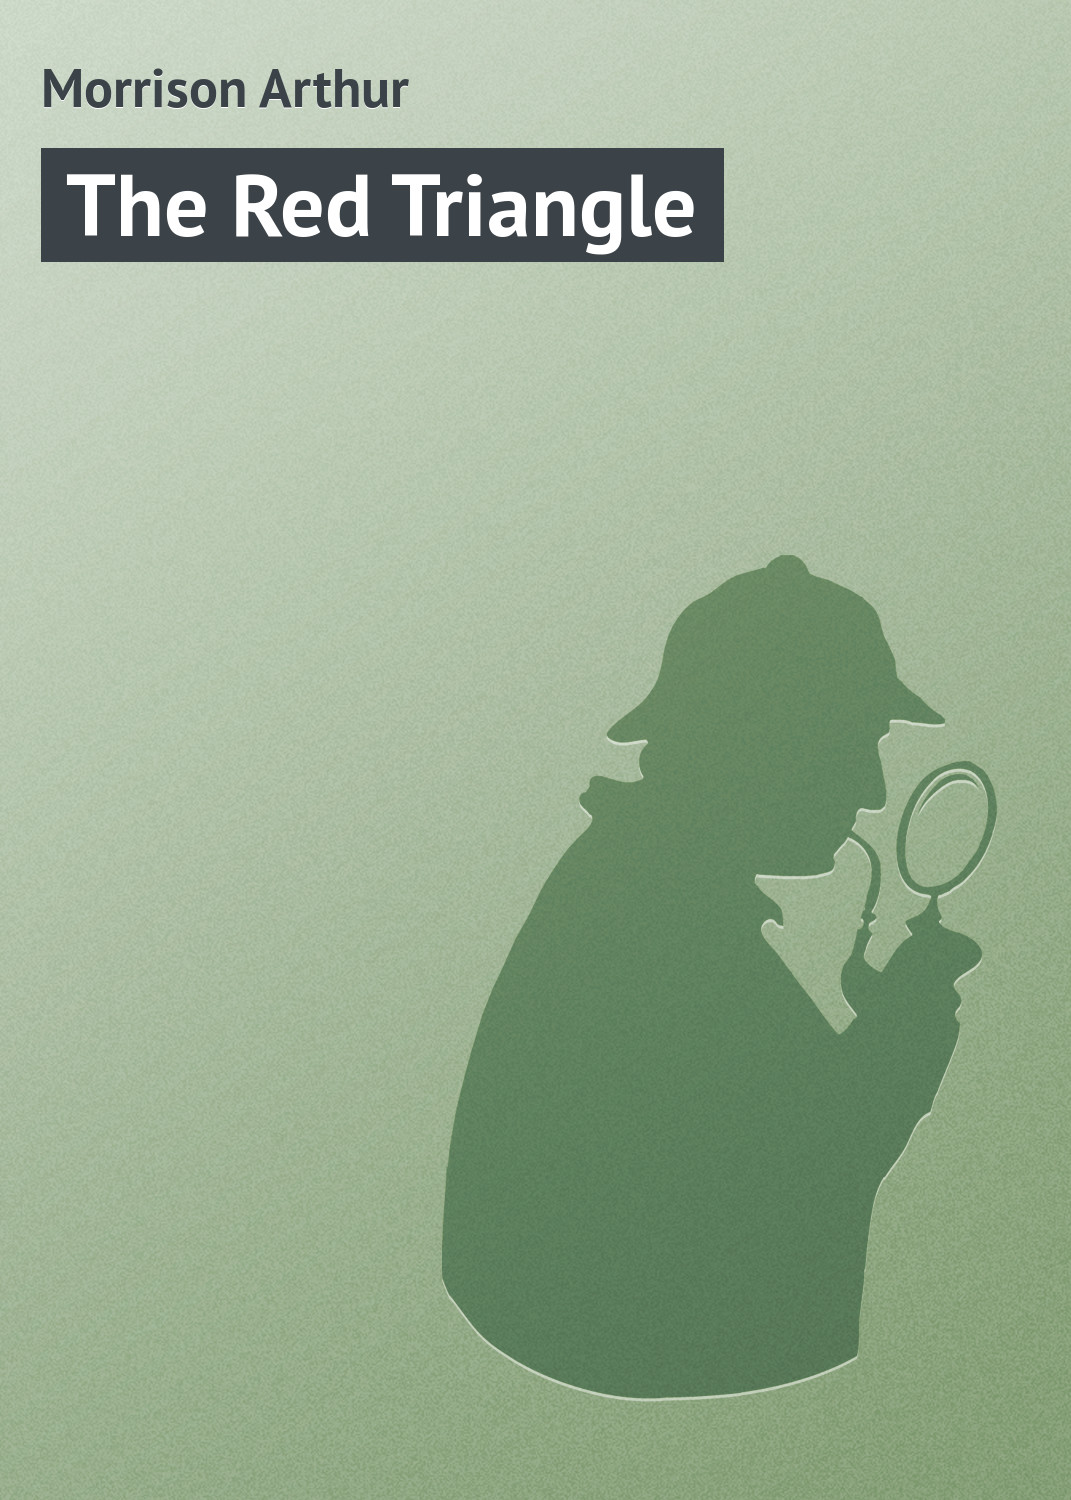 Книга The Red Triangle из серии , созданная Arthur Morrison, может относится к жанру Классические детективы, Зарубежные детективы, Зарубежная классика, Иностранные языки. Стоимость электронной книги The Red Triangle с идентификатором 23157051 составляет 5.99 руб.